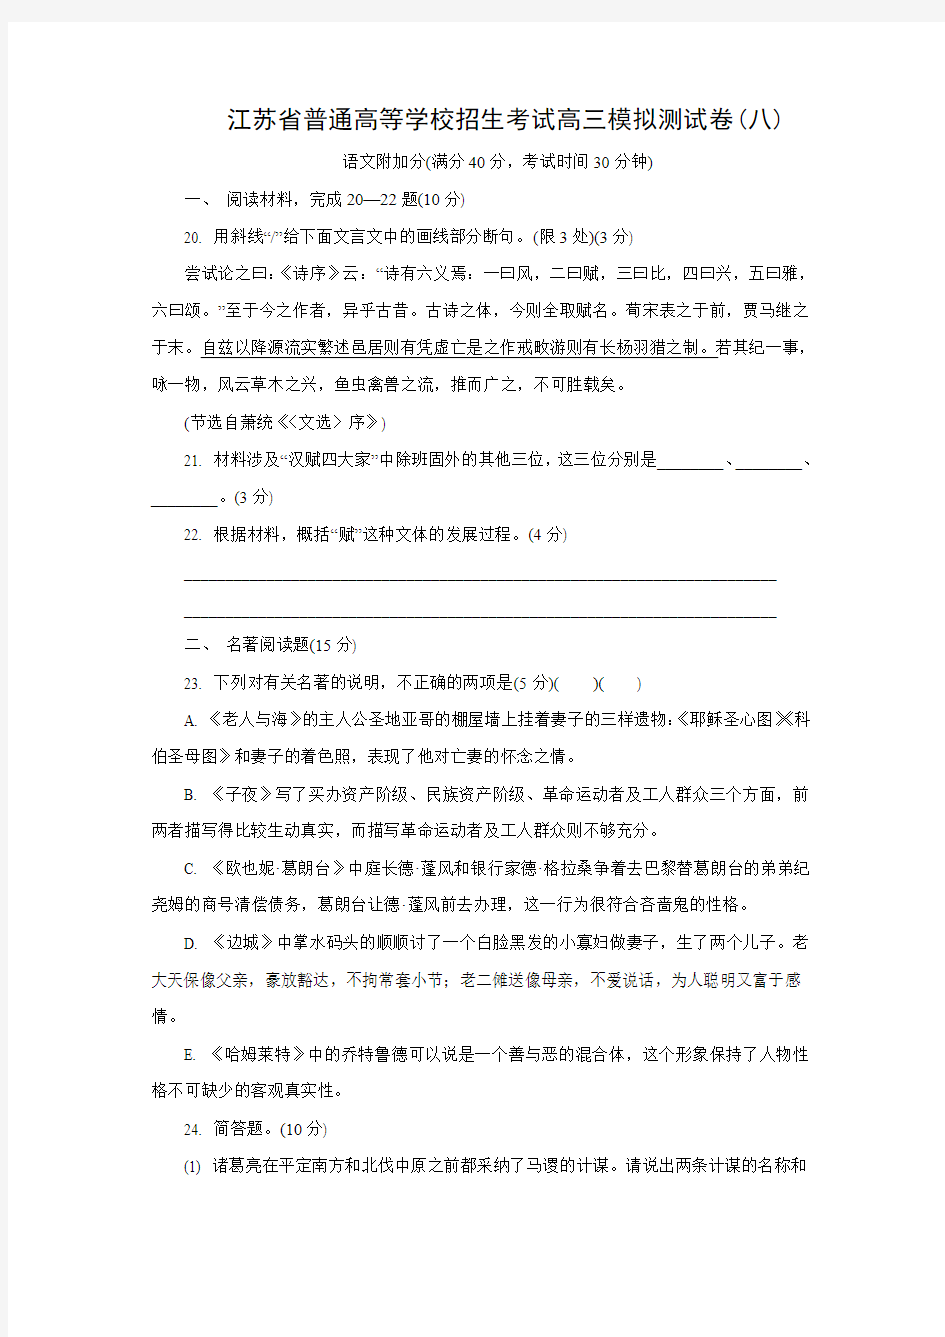 江苏省普通高等学校2018年高三招生考试20套模拟测试附加题语文试题(八)(含答案)